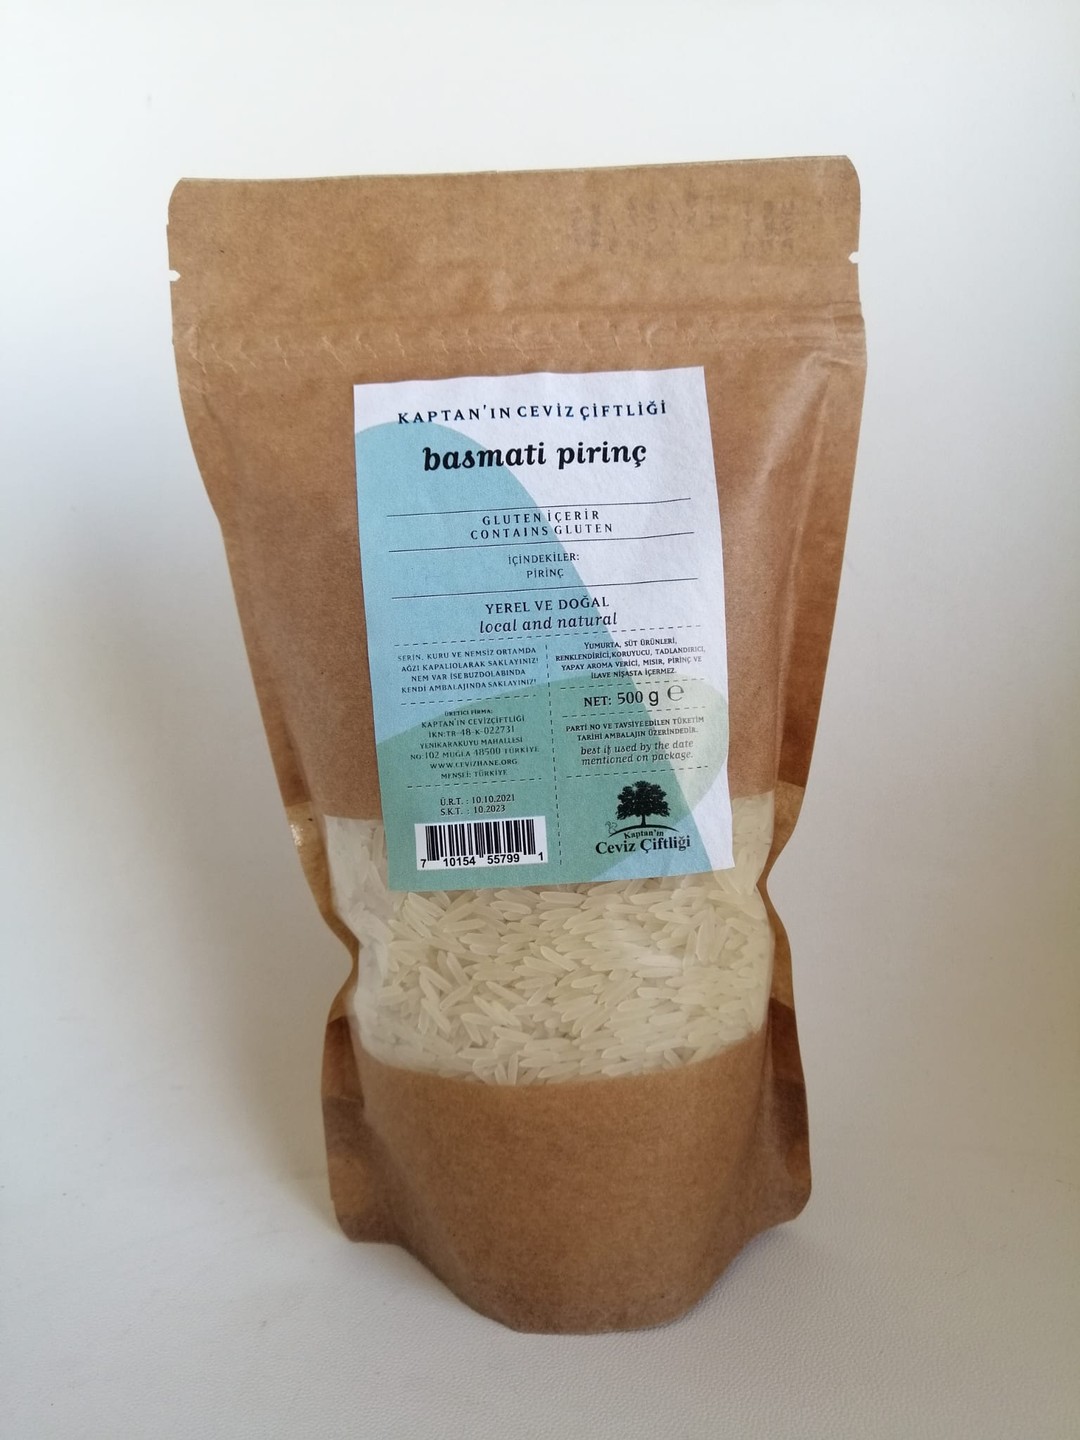 Pure Basmati Rice, Premium Aromatic and Authentic Rice